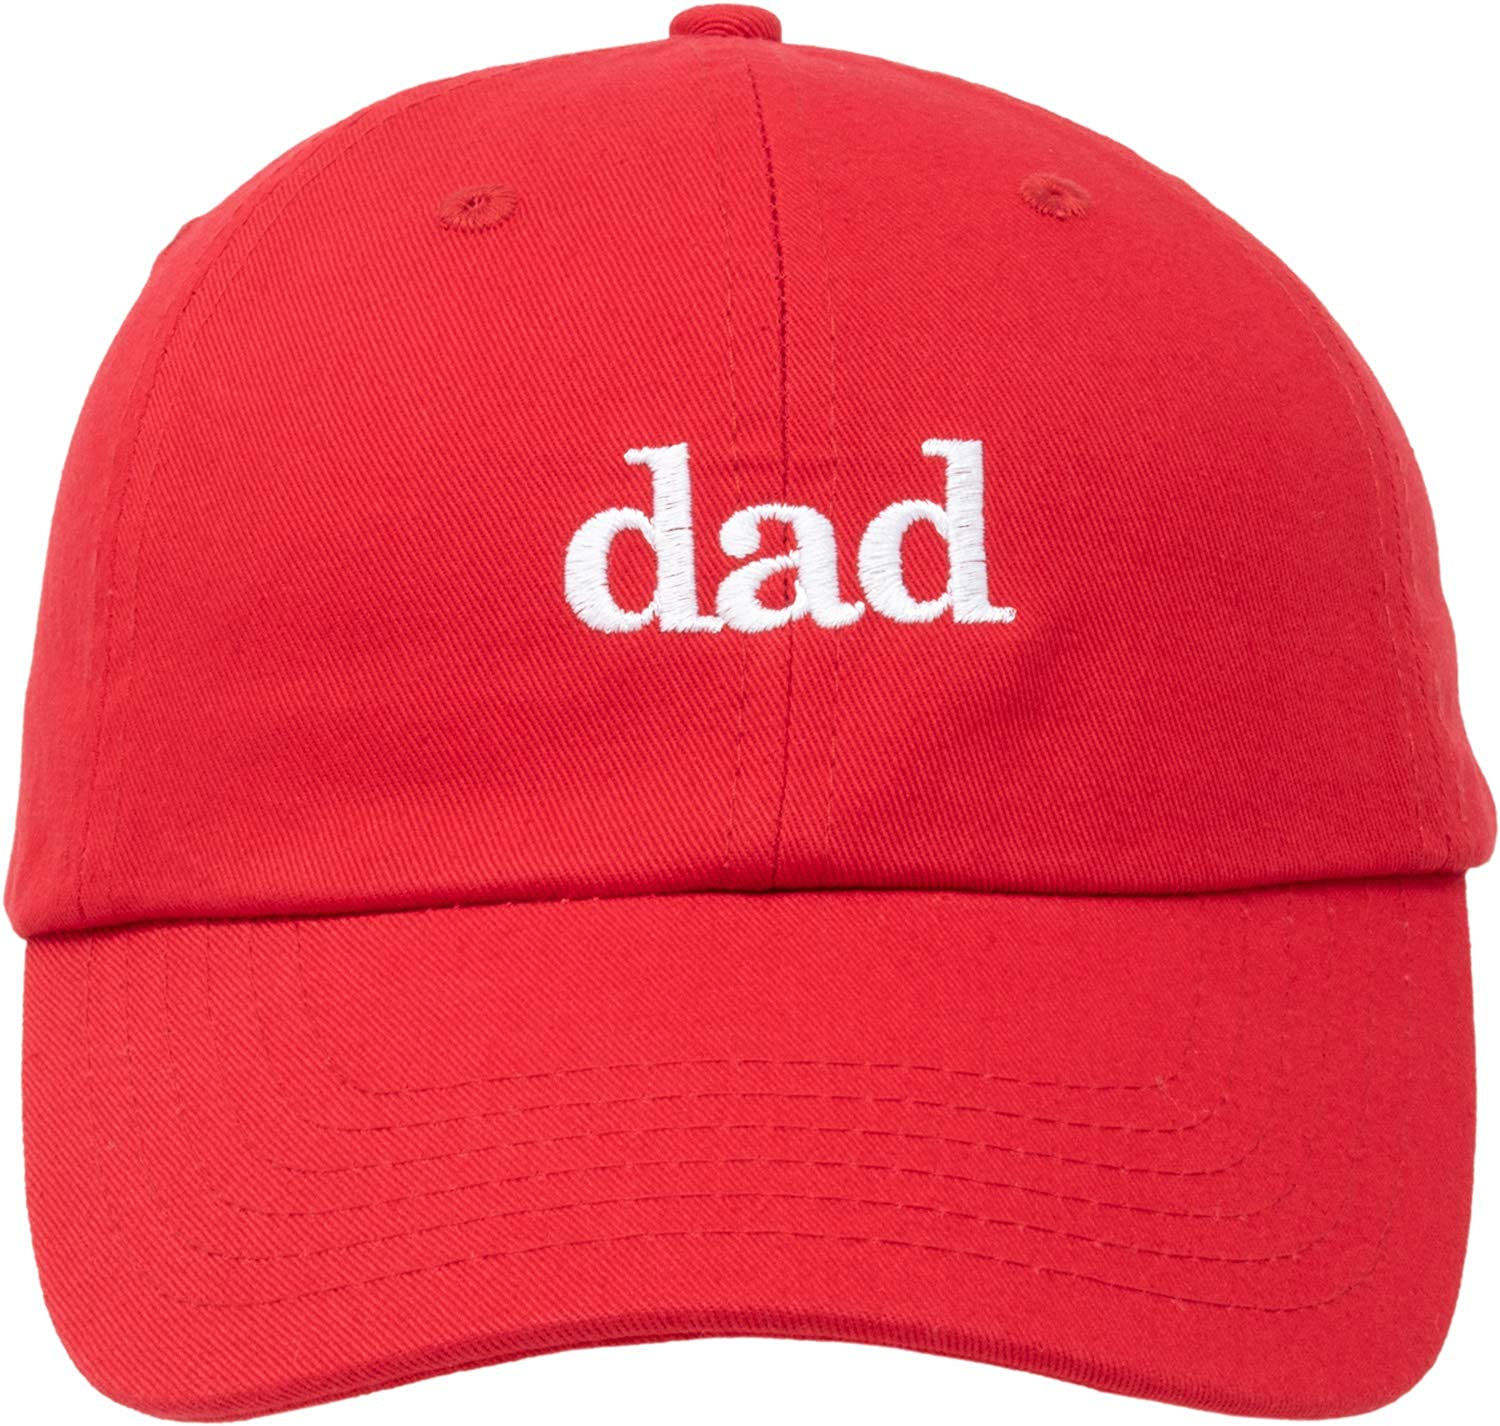 爸爸帽子优惠券